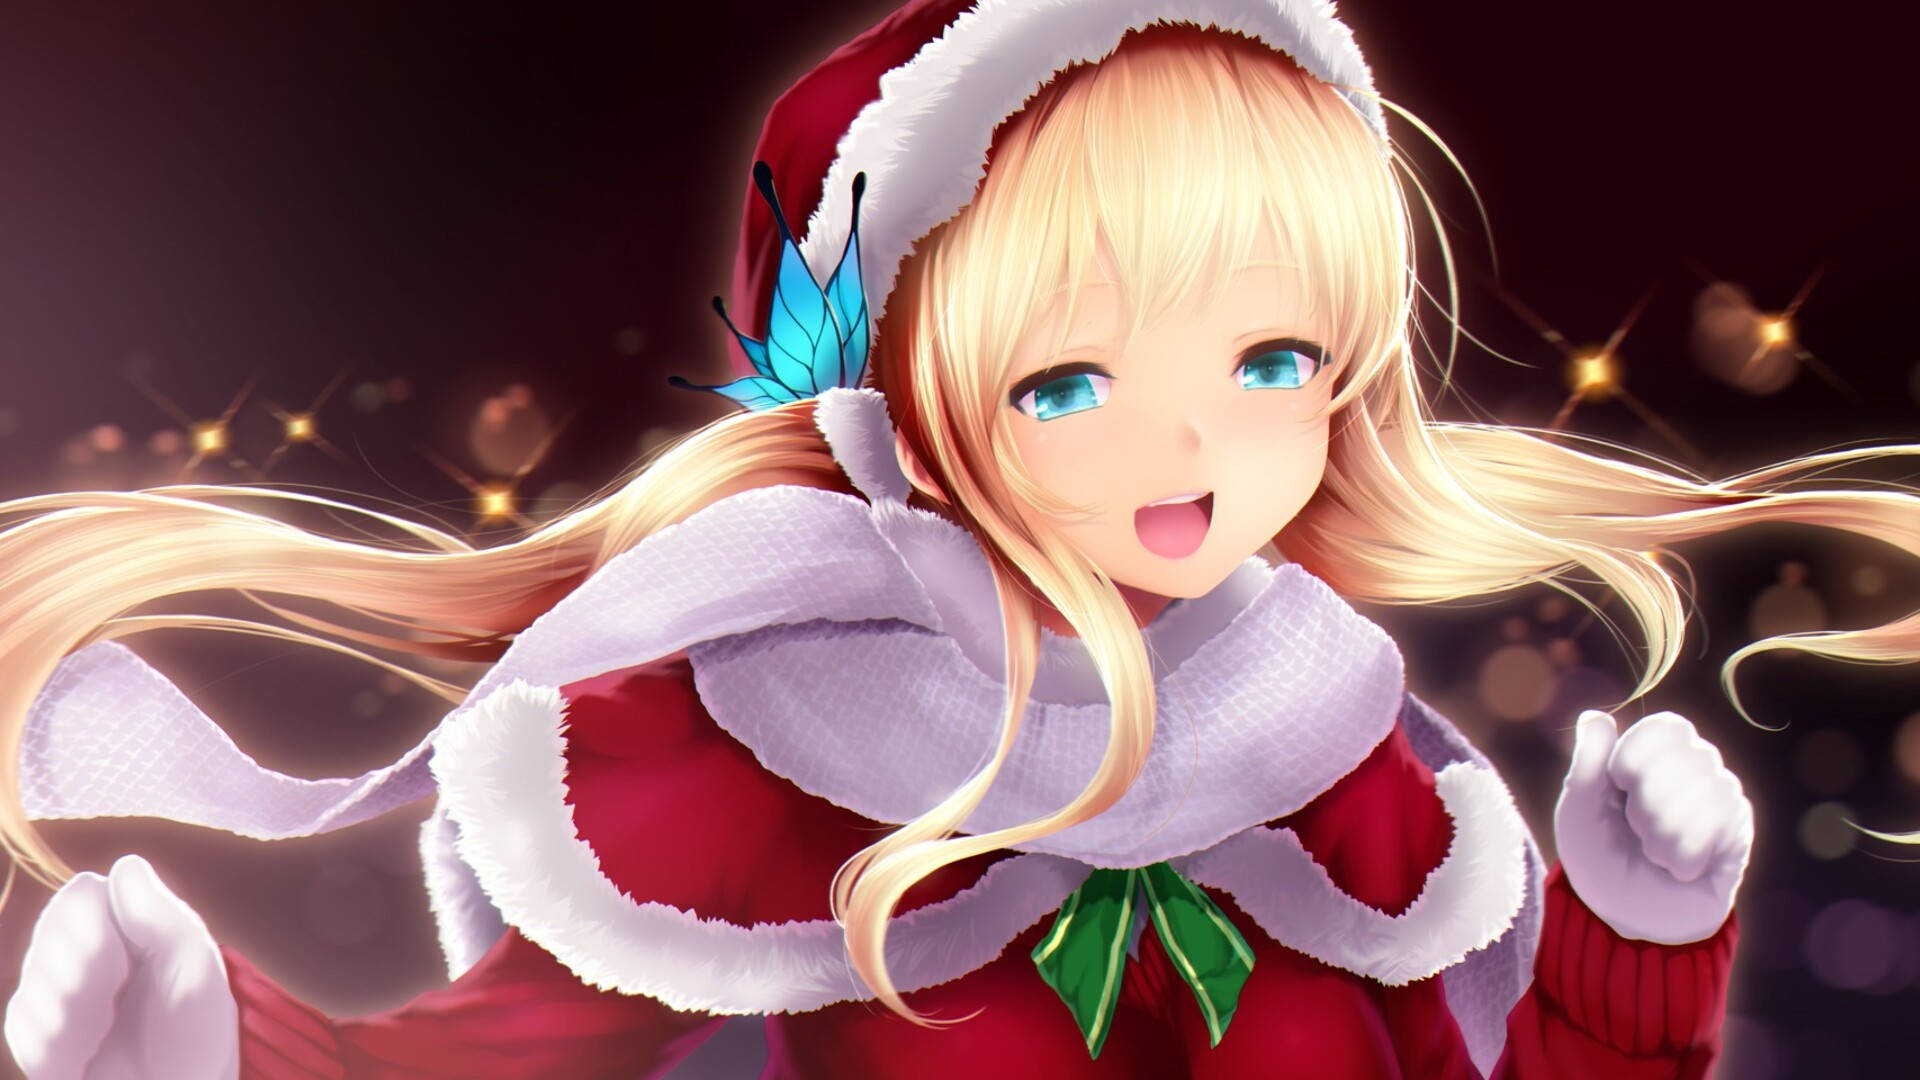 Blonde Girl Anime Christmas Digital Art Background